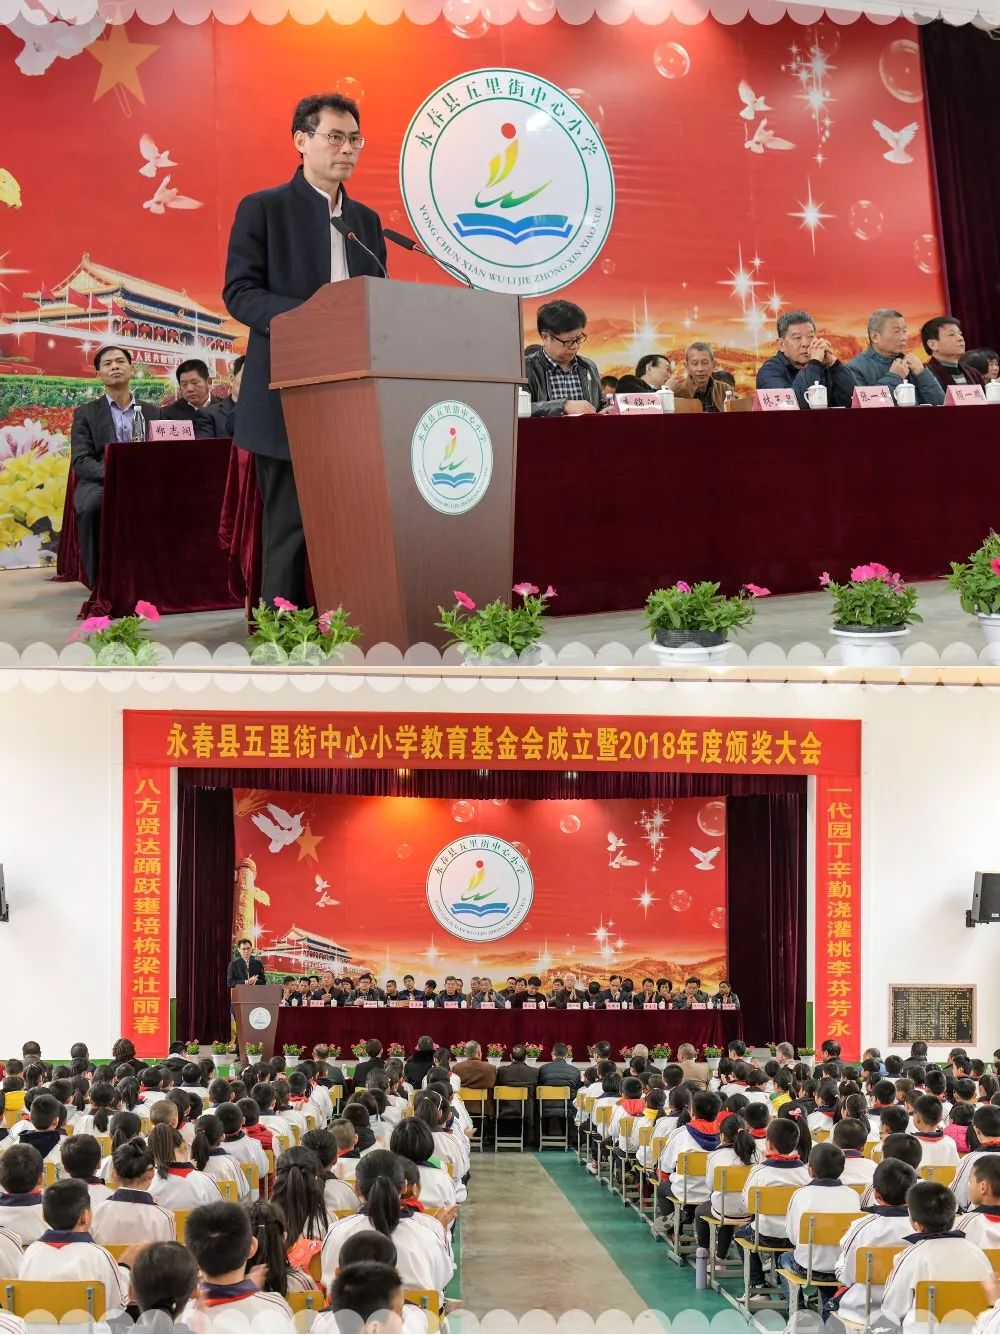 颜一鹏副县长代表县委县政府向基金会成立表示热烈祝贺,他希望教育